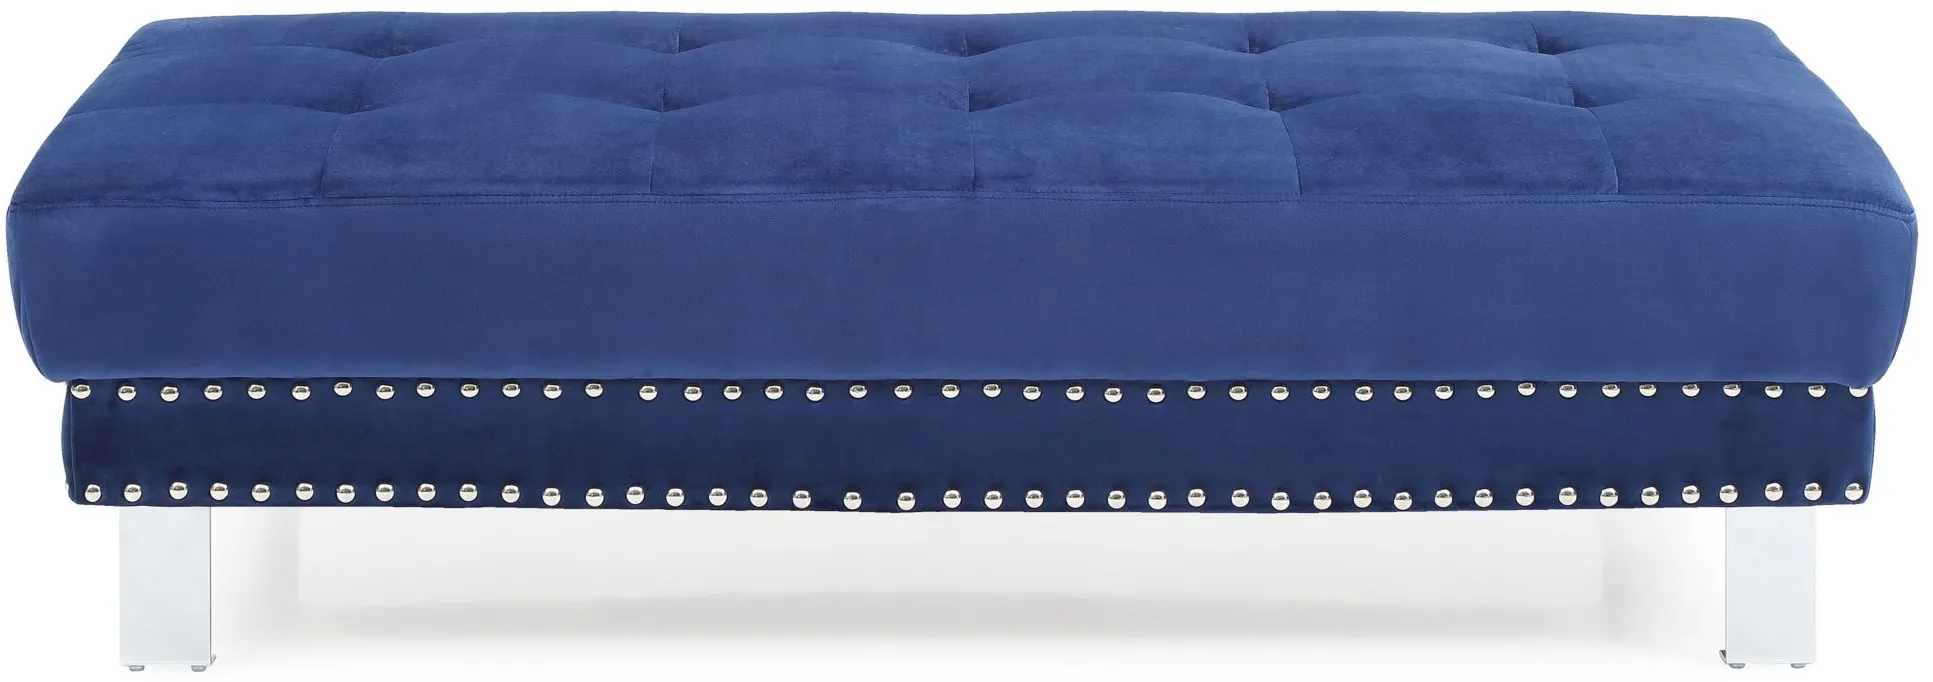 Derek Ottoman in Navy Blue by Glory Furniture